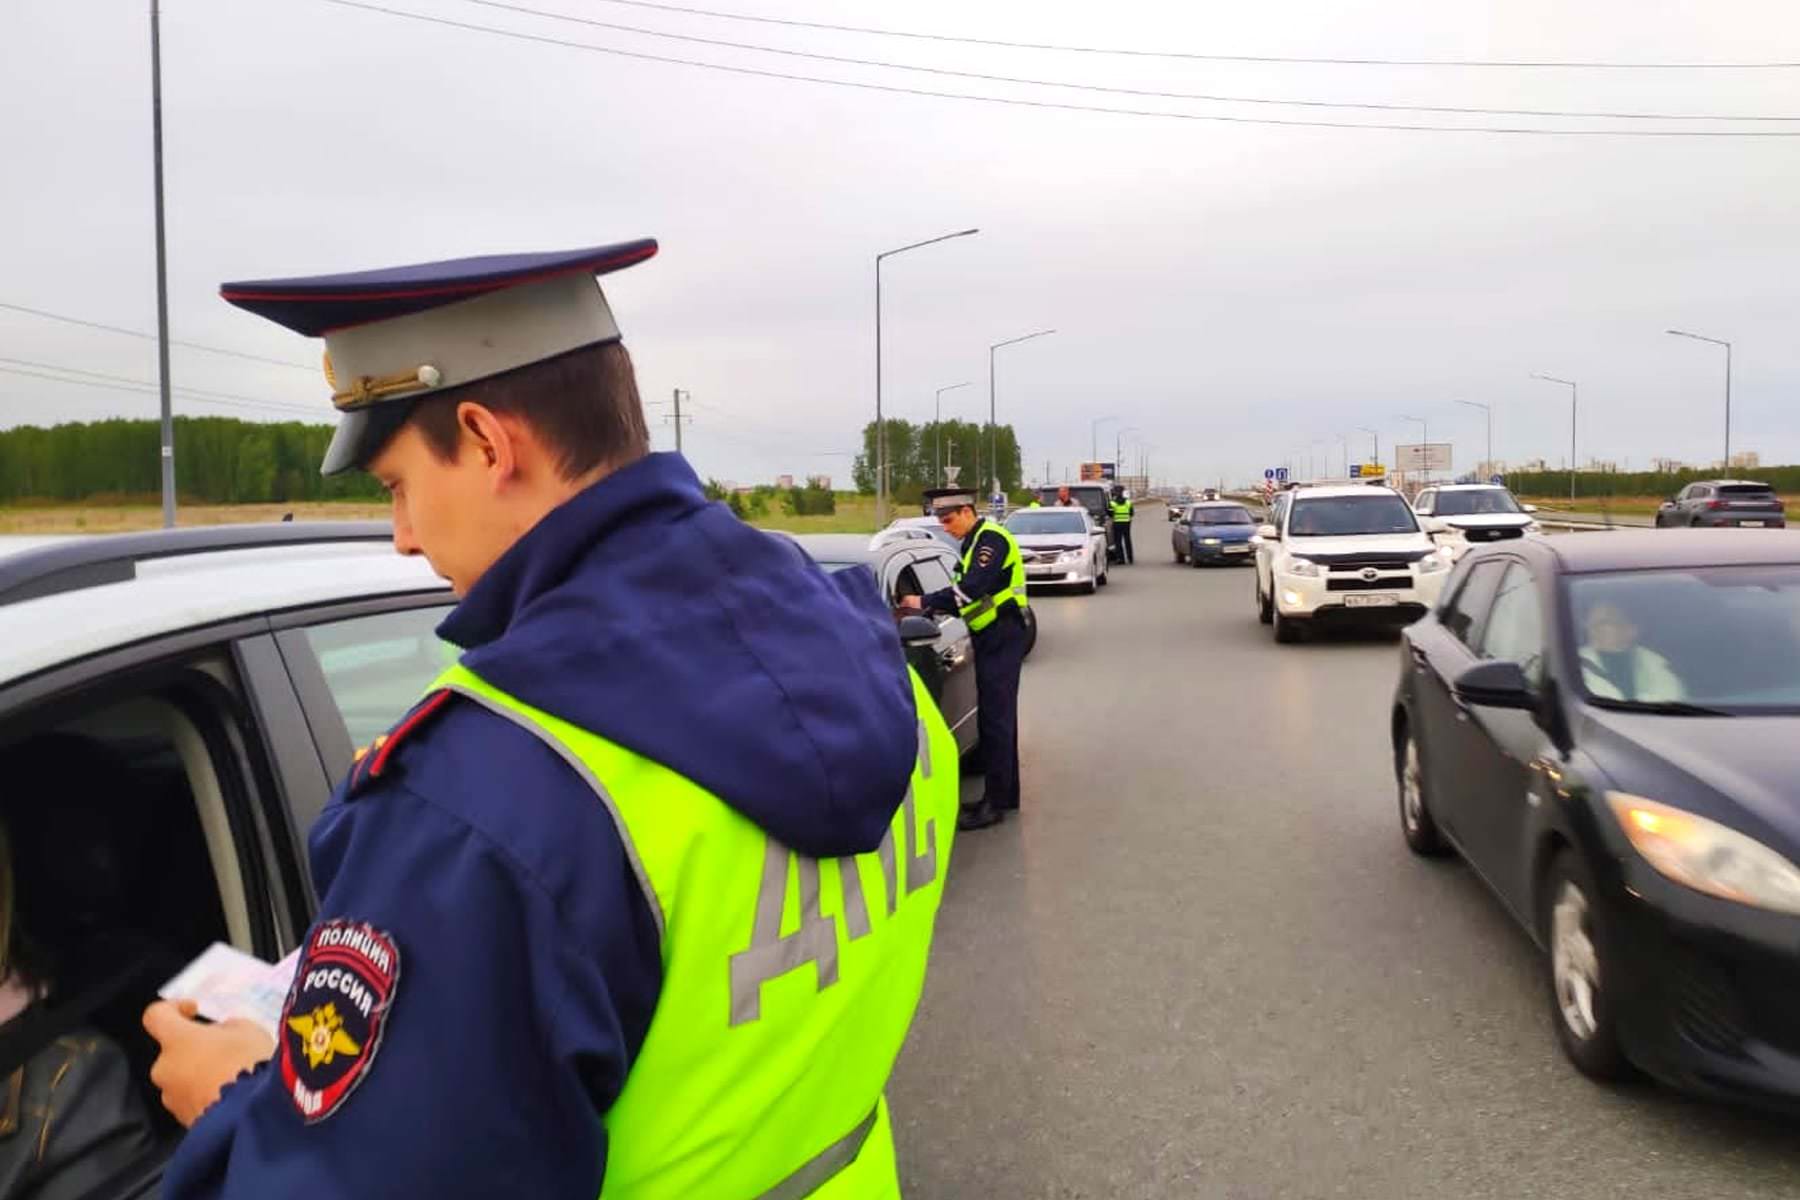 С 3 июля. Водителей автомобилей начнут массово штрафовать на 500 рублей за предмет в салоне